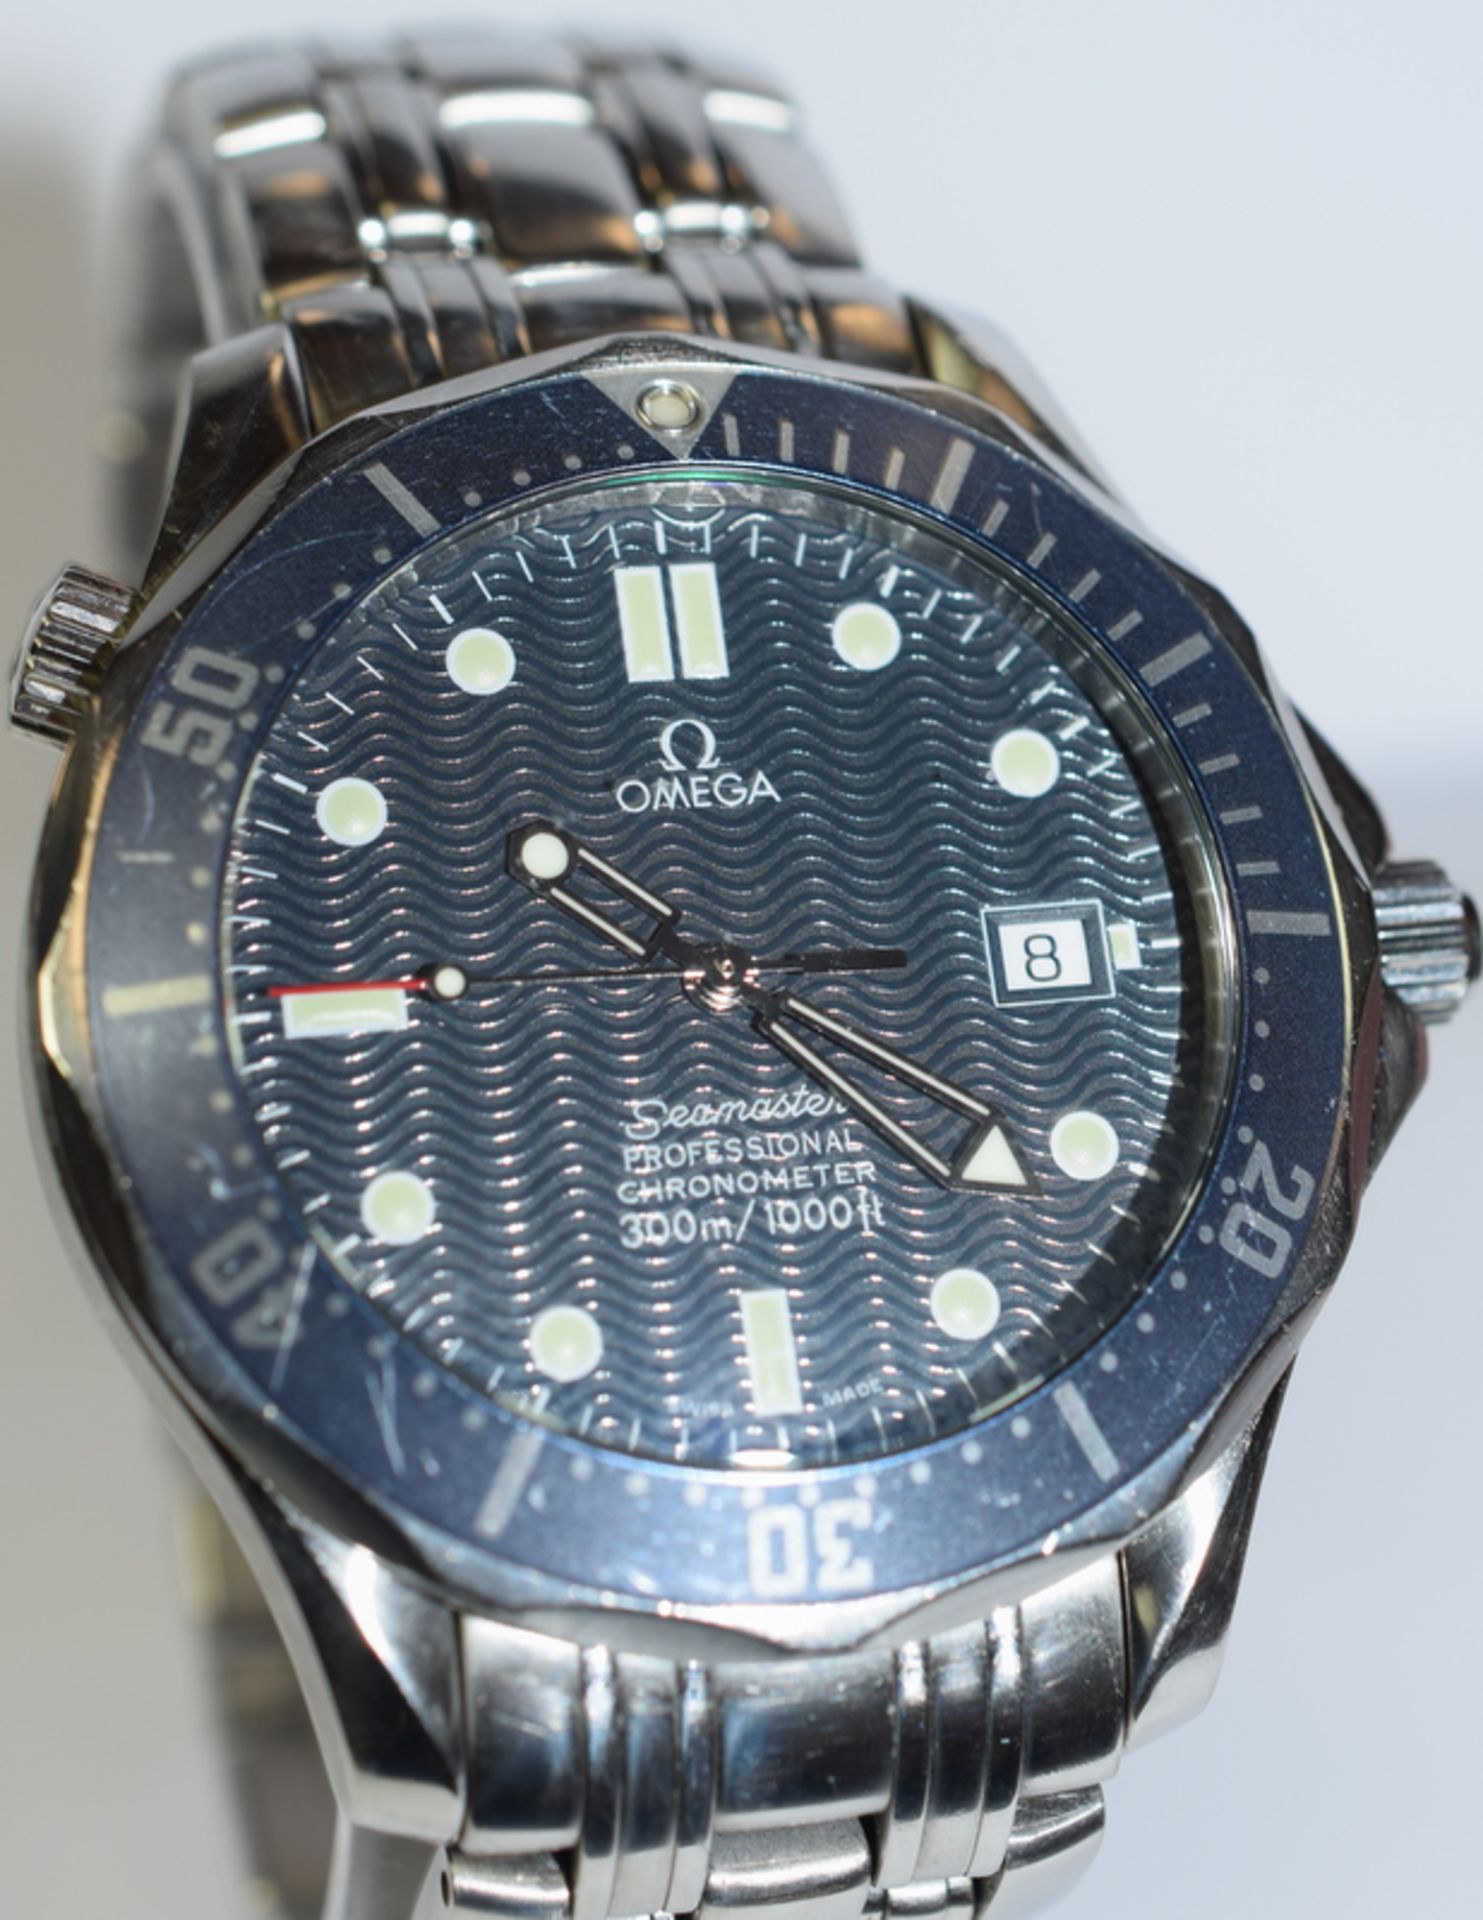 Omega Seamaster Professional Chronometer Full Size 41mm Case. - Image 4 of 6